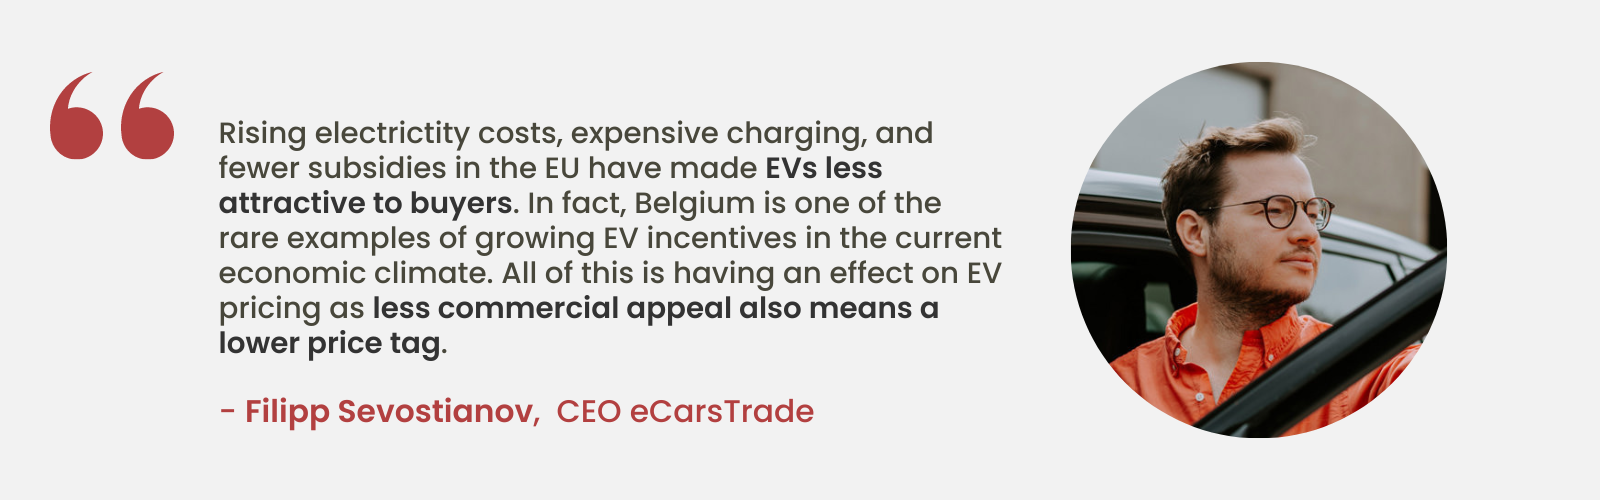 L'avis d'expert de Filipp Sevostianov, PDG d'eCarsTrade, sur la diminution de l'attrait des véhicules électriques en raison de la hausse des coûts et de la diminution des subventions dans l'UE, soulignant la position unique de la Belgique en matière d'incitations croissantes aux véhicules électriques.